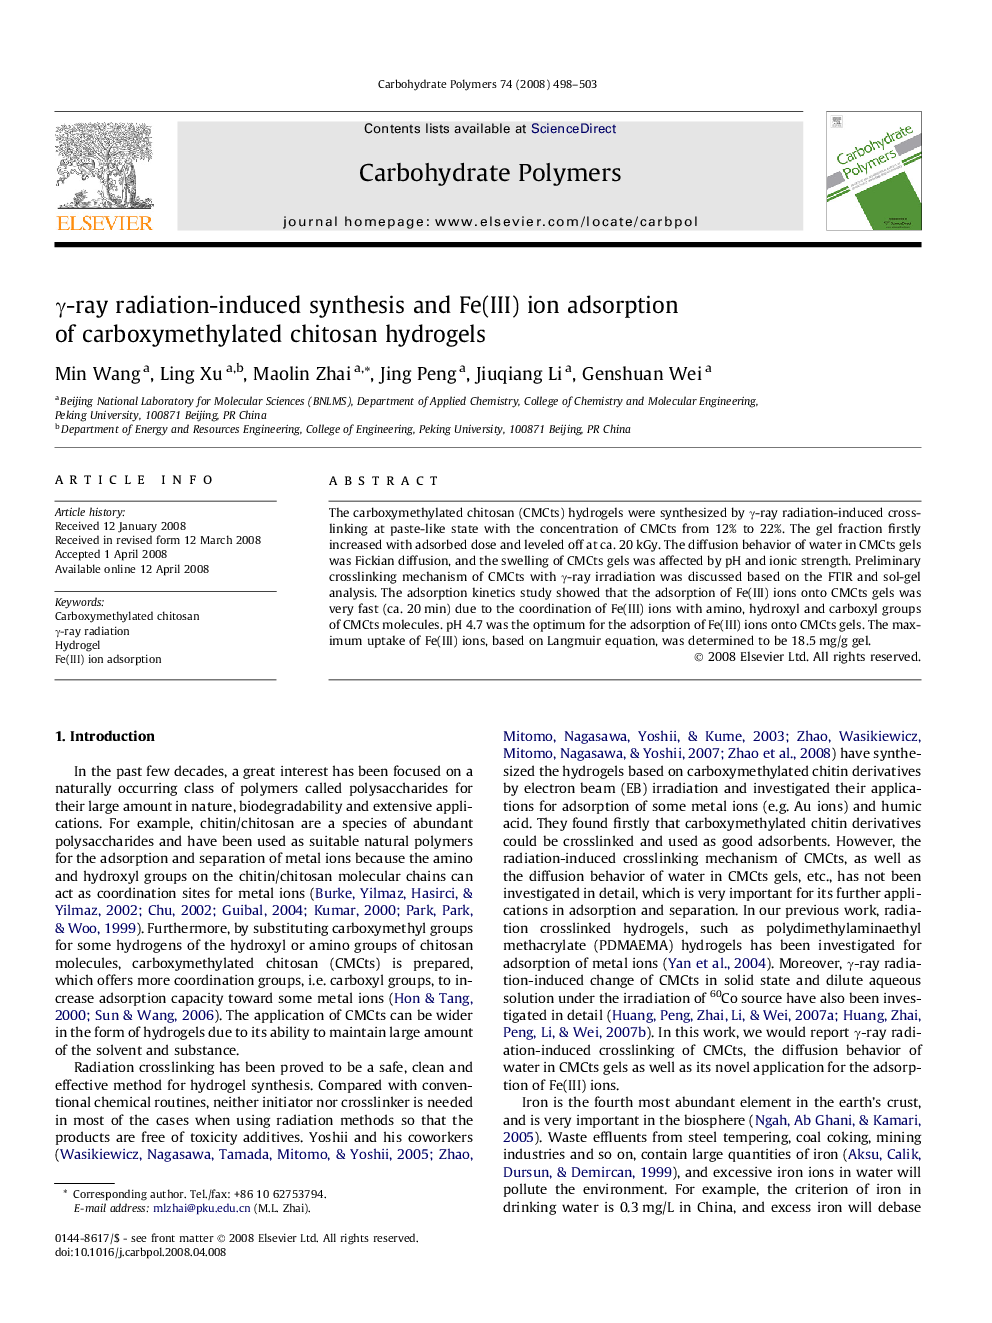 γ-ray radiation-induced synthesis and Fe(III) ion adsorption of carboxymethylated chitosan hydrogels